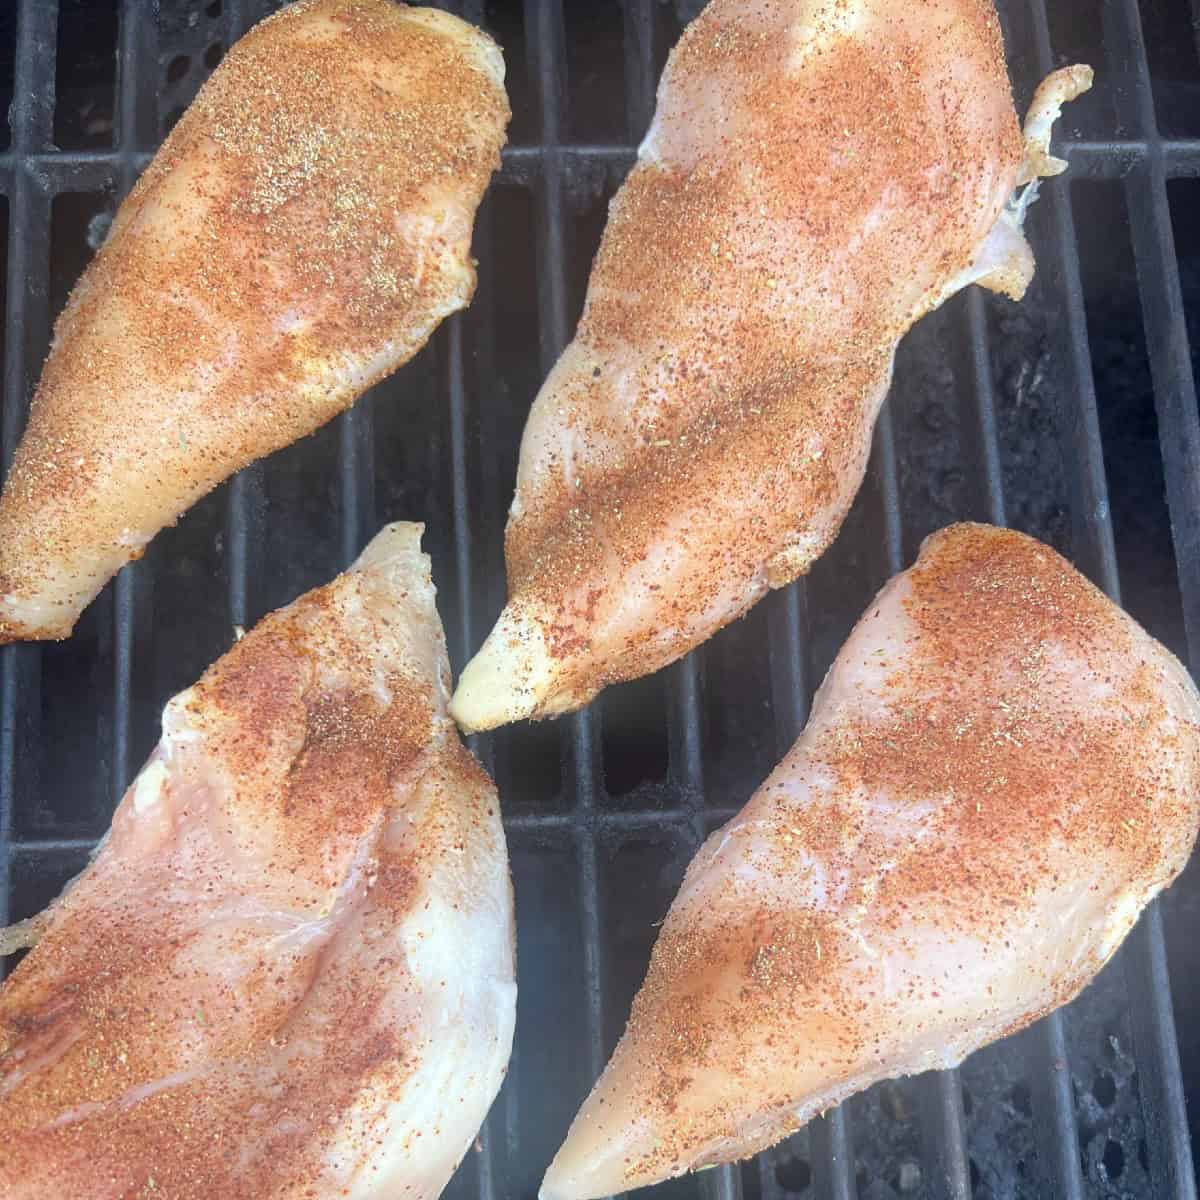 grill seasoned chicken breasts